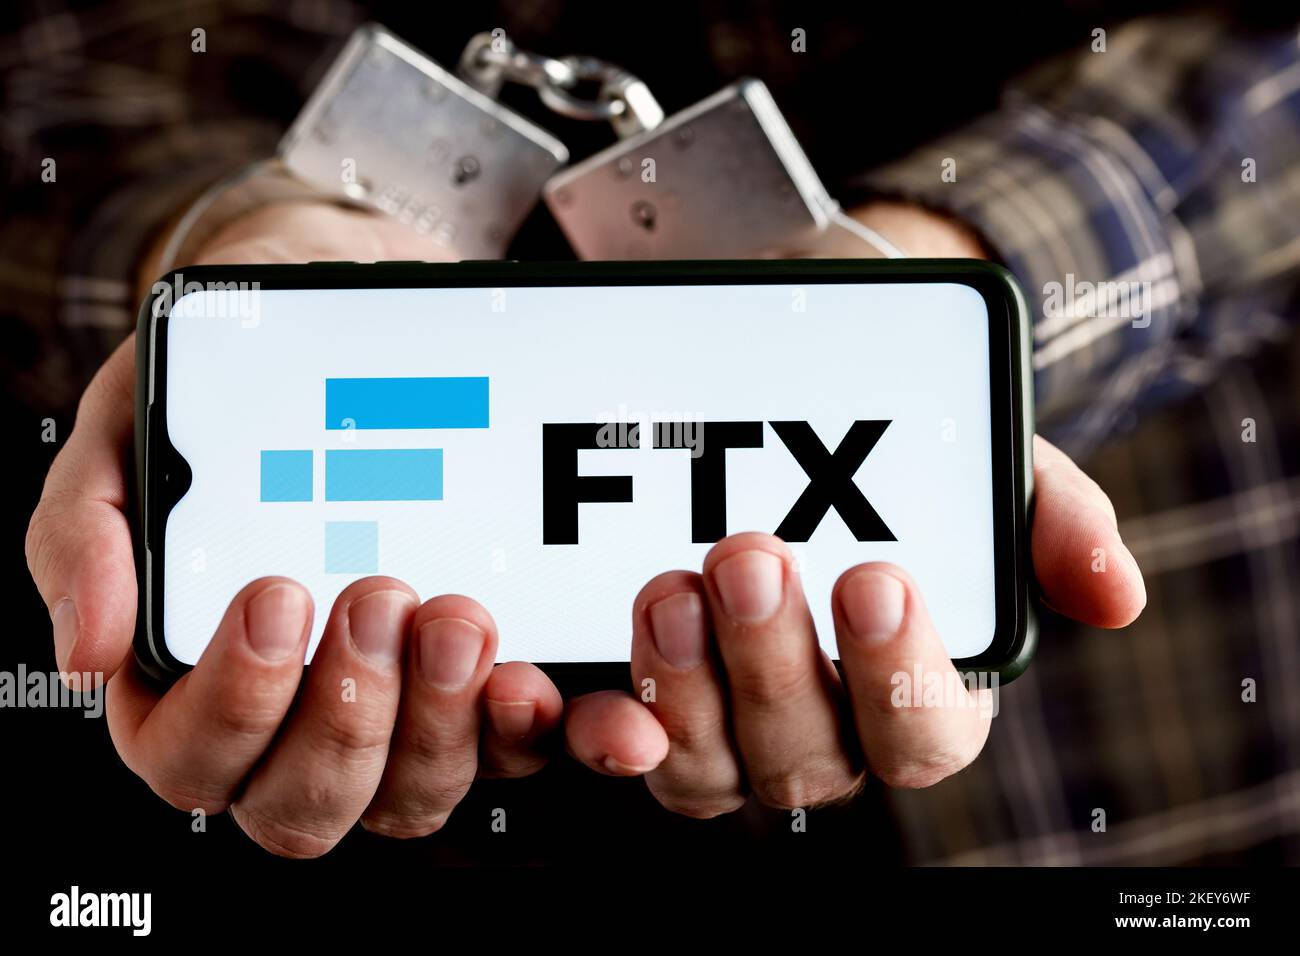 FTX ist eine Kryptowährungsbörse. Hände mit Handschellen halten das Smartphone mit FTX-Logo auf dem Bildschirm. Stockfoto